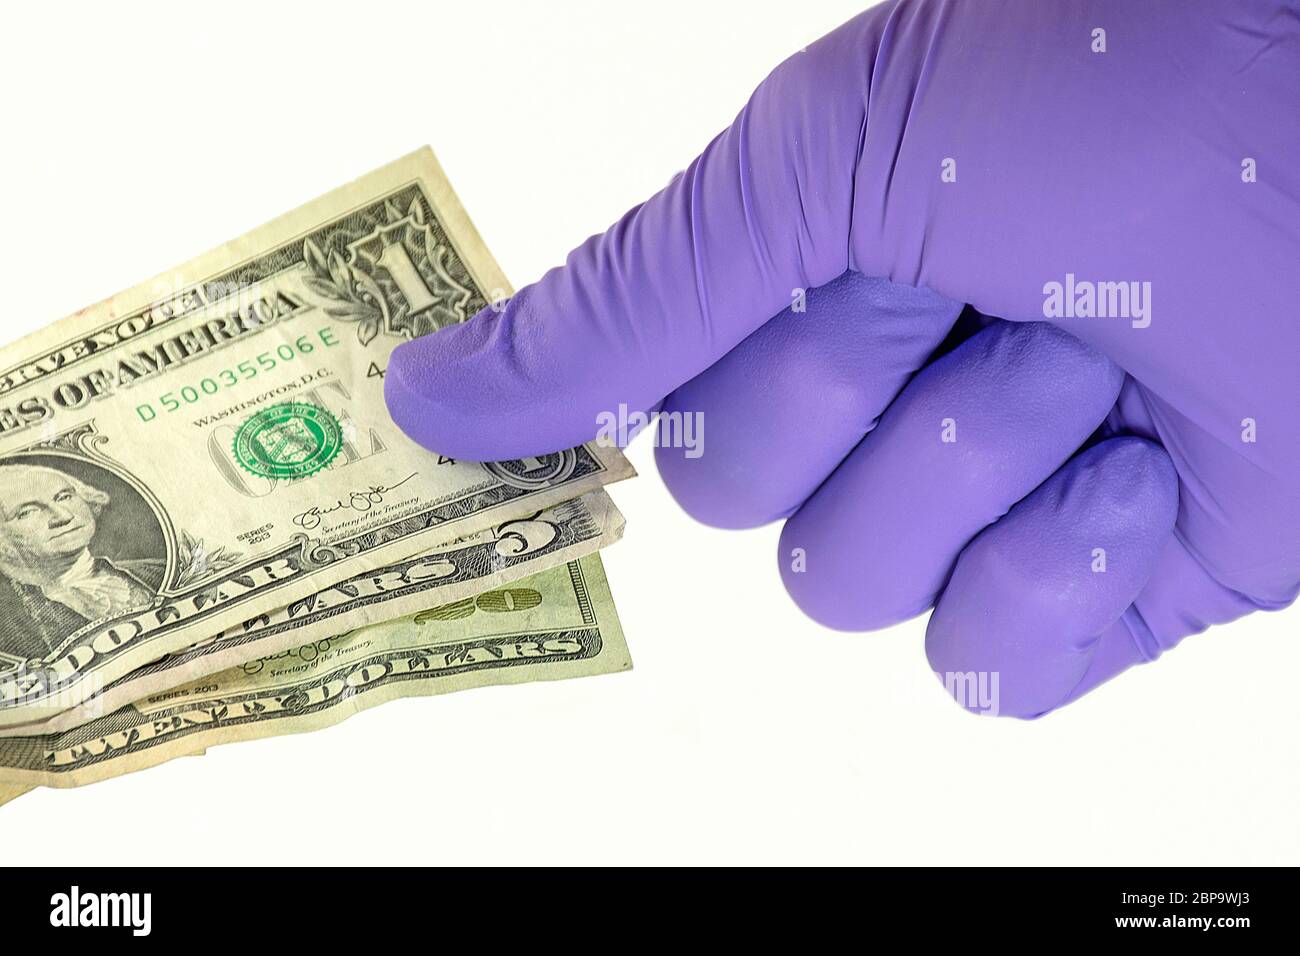 gant en latex violet protégeant les mains des germes sur les billets de dollars Banque D'Images